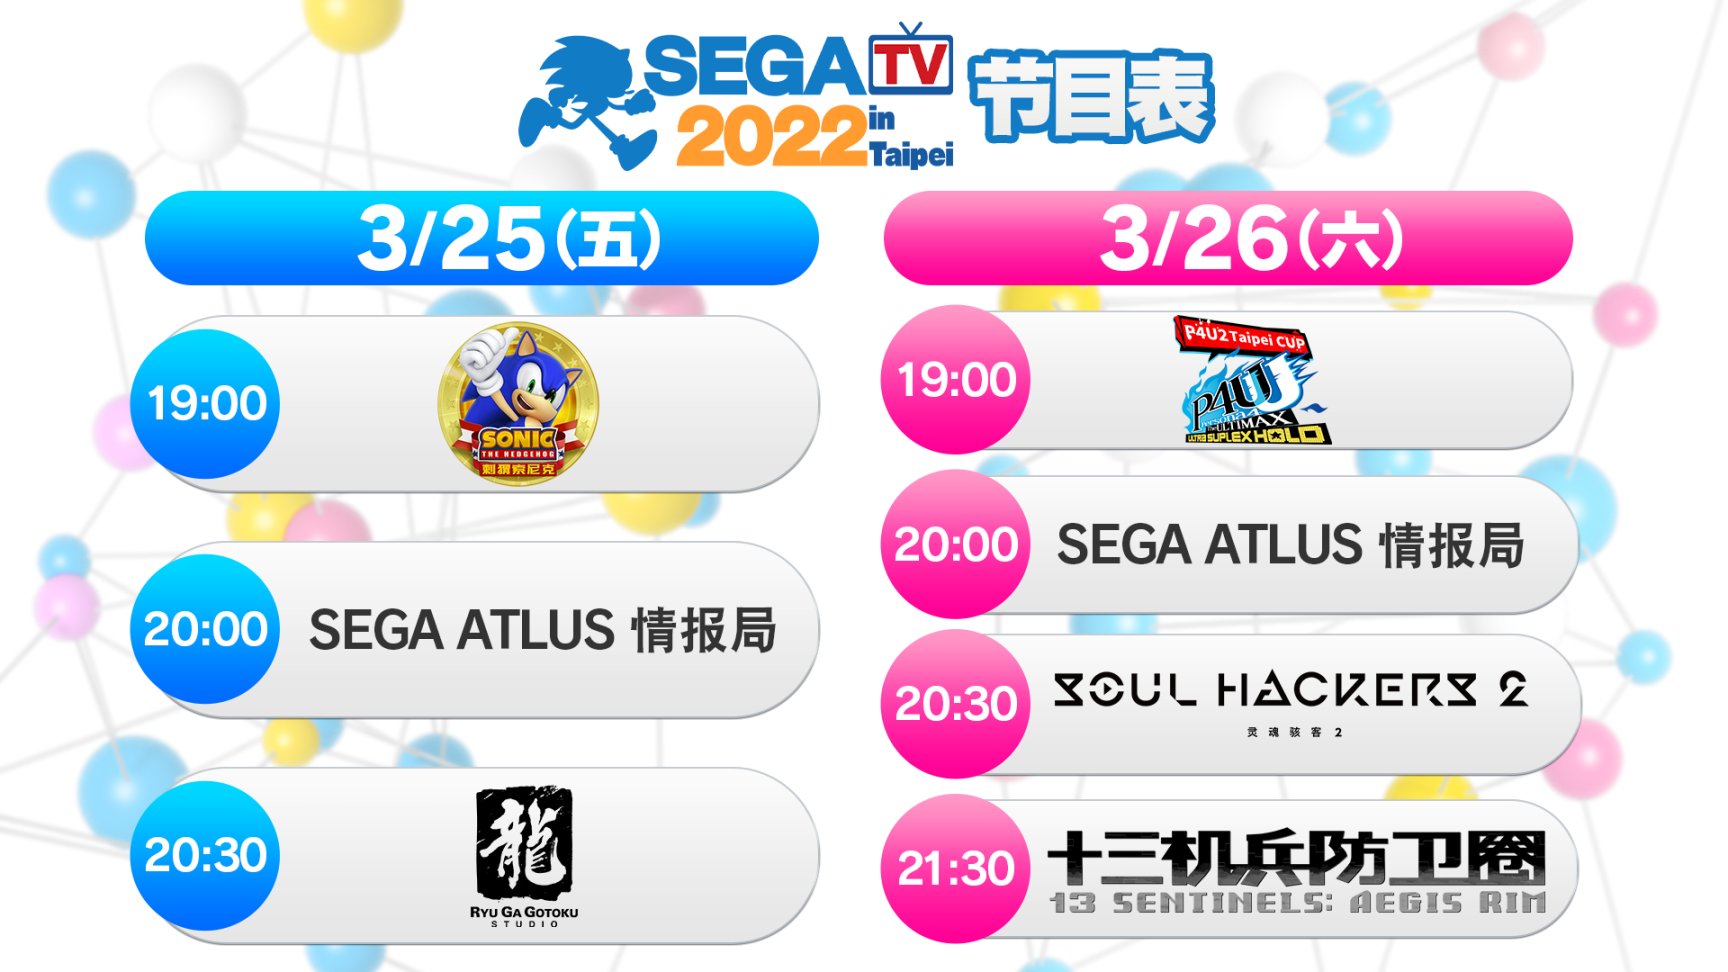 【主机游戏】「SEGA TV 2022 in Taipei」直播节目决定于3月25日～3月26日举行！